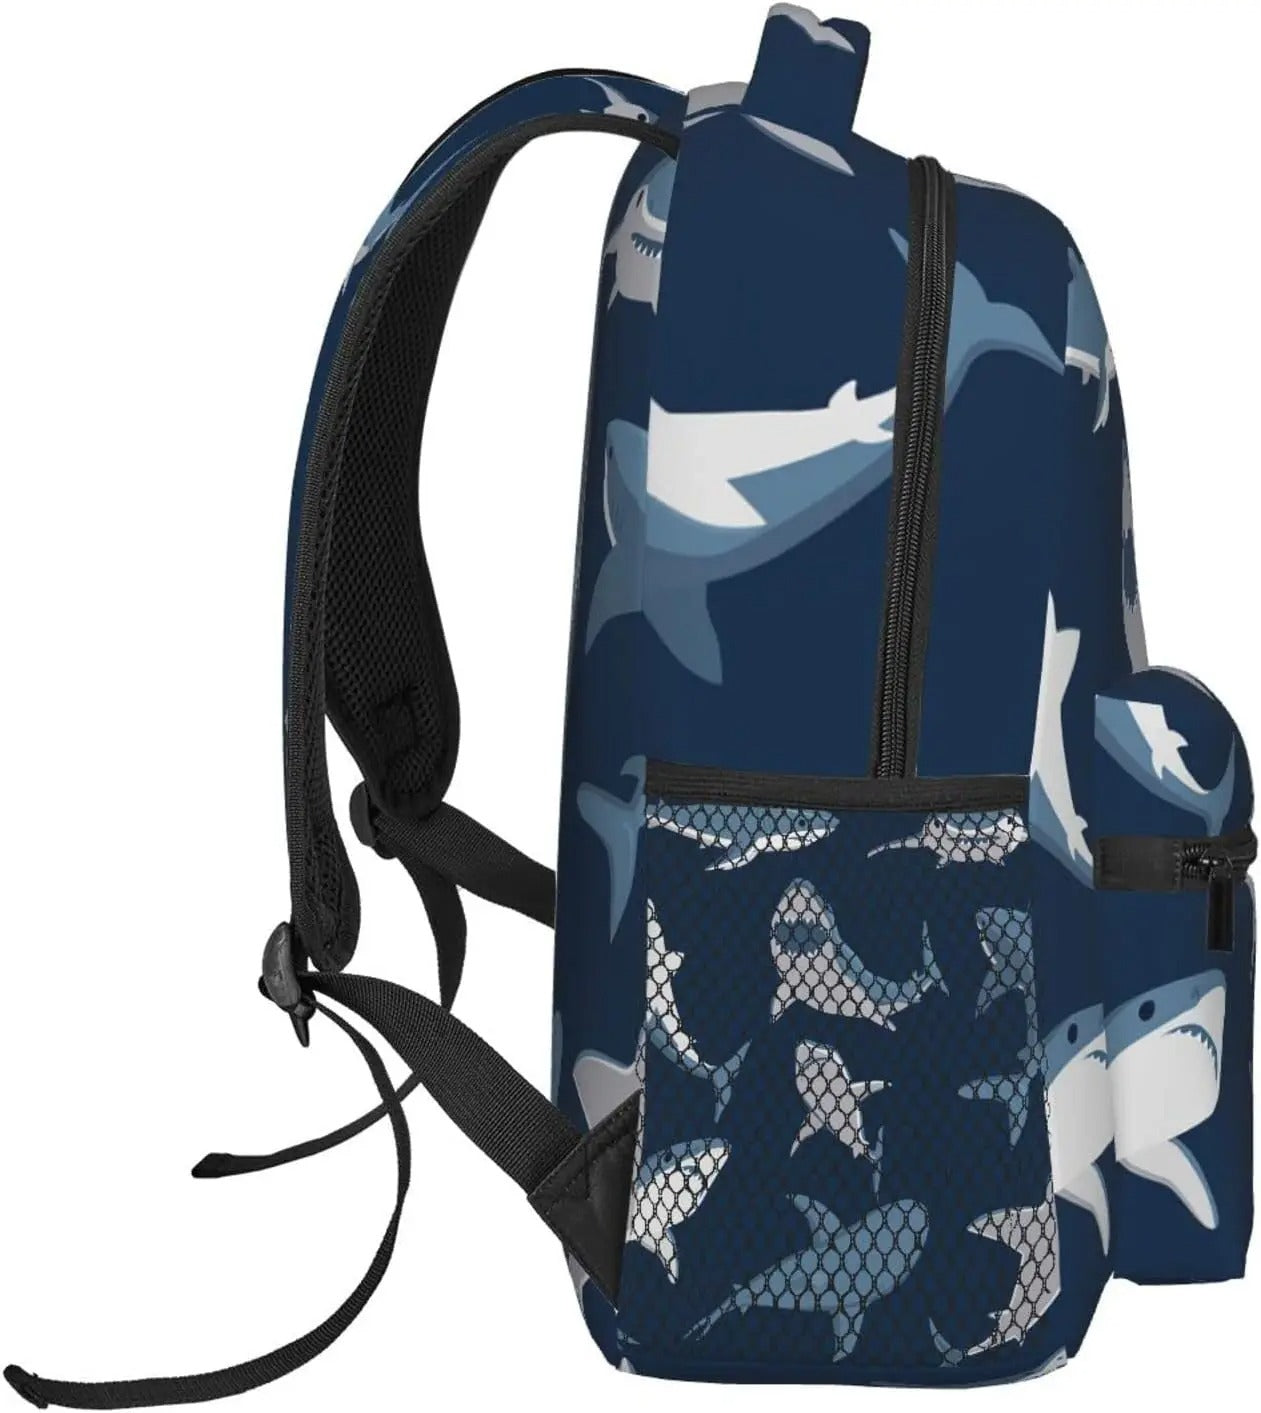 Blue Shark Backpack